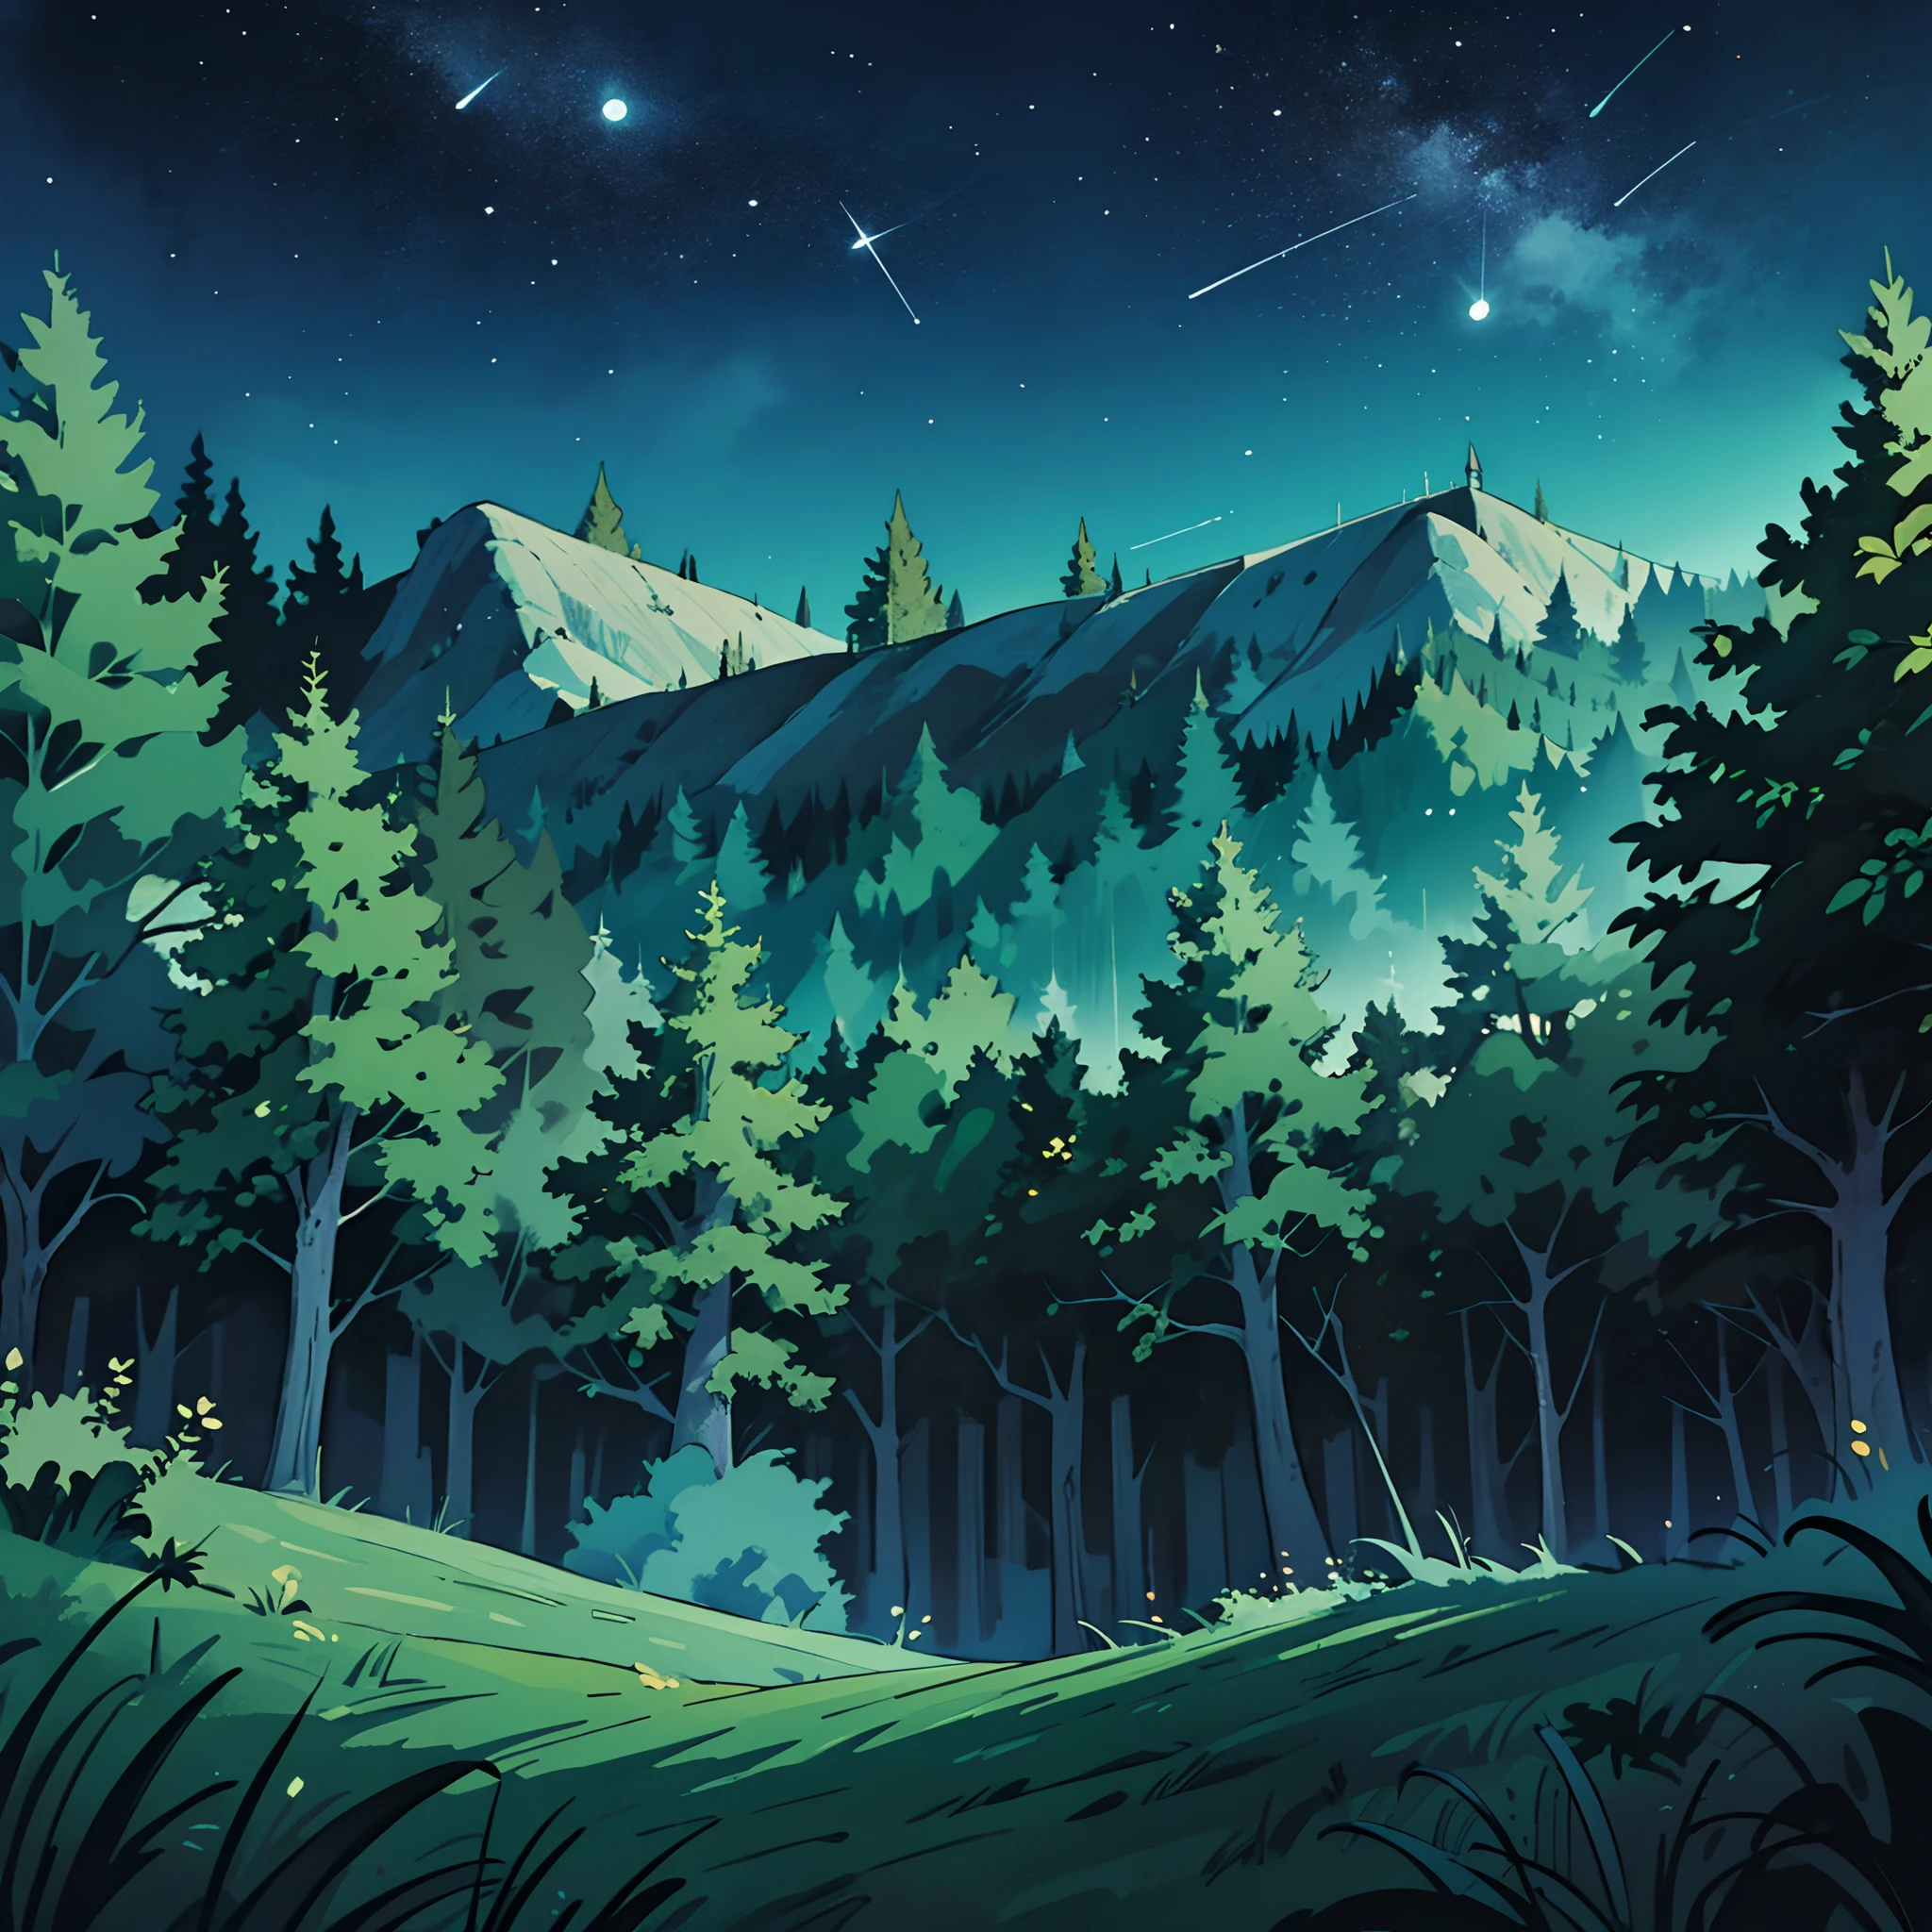 لقطة واسعة لليلة صيف الغابة, البرية مع الأشجار الخضراء النابضة بالحياة وسماء الليل الصافية الساطعة. خلفية أنيمي